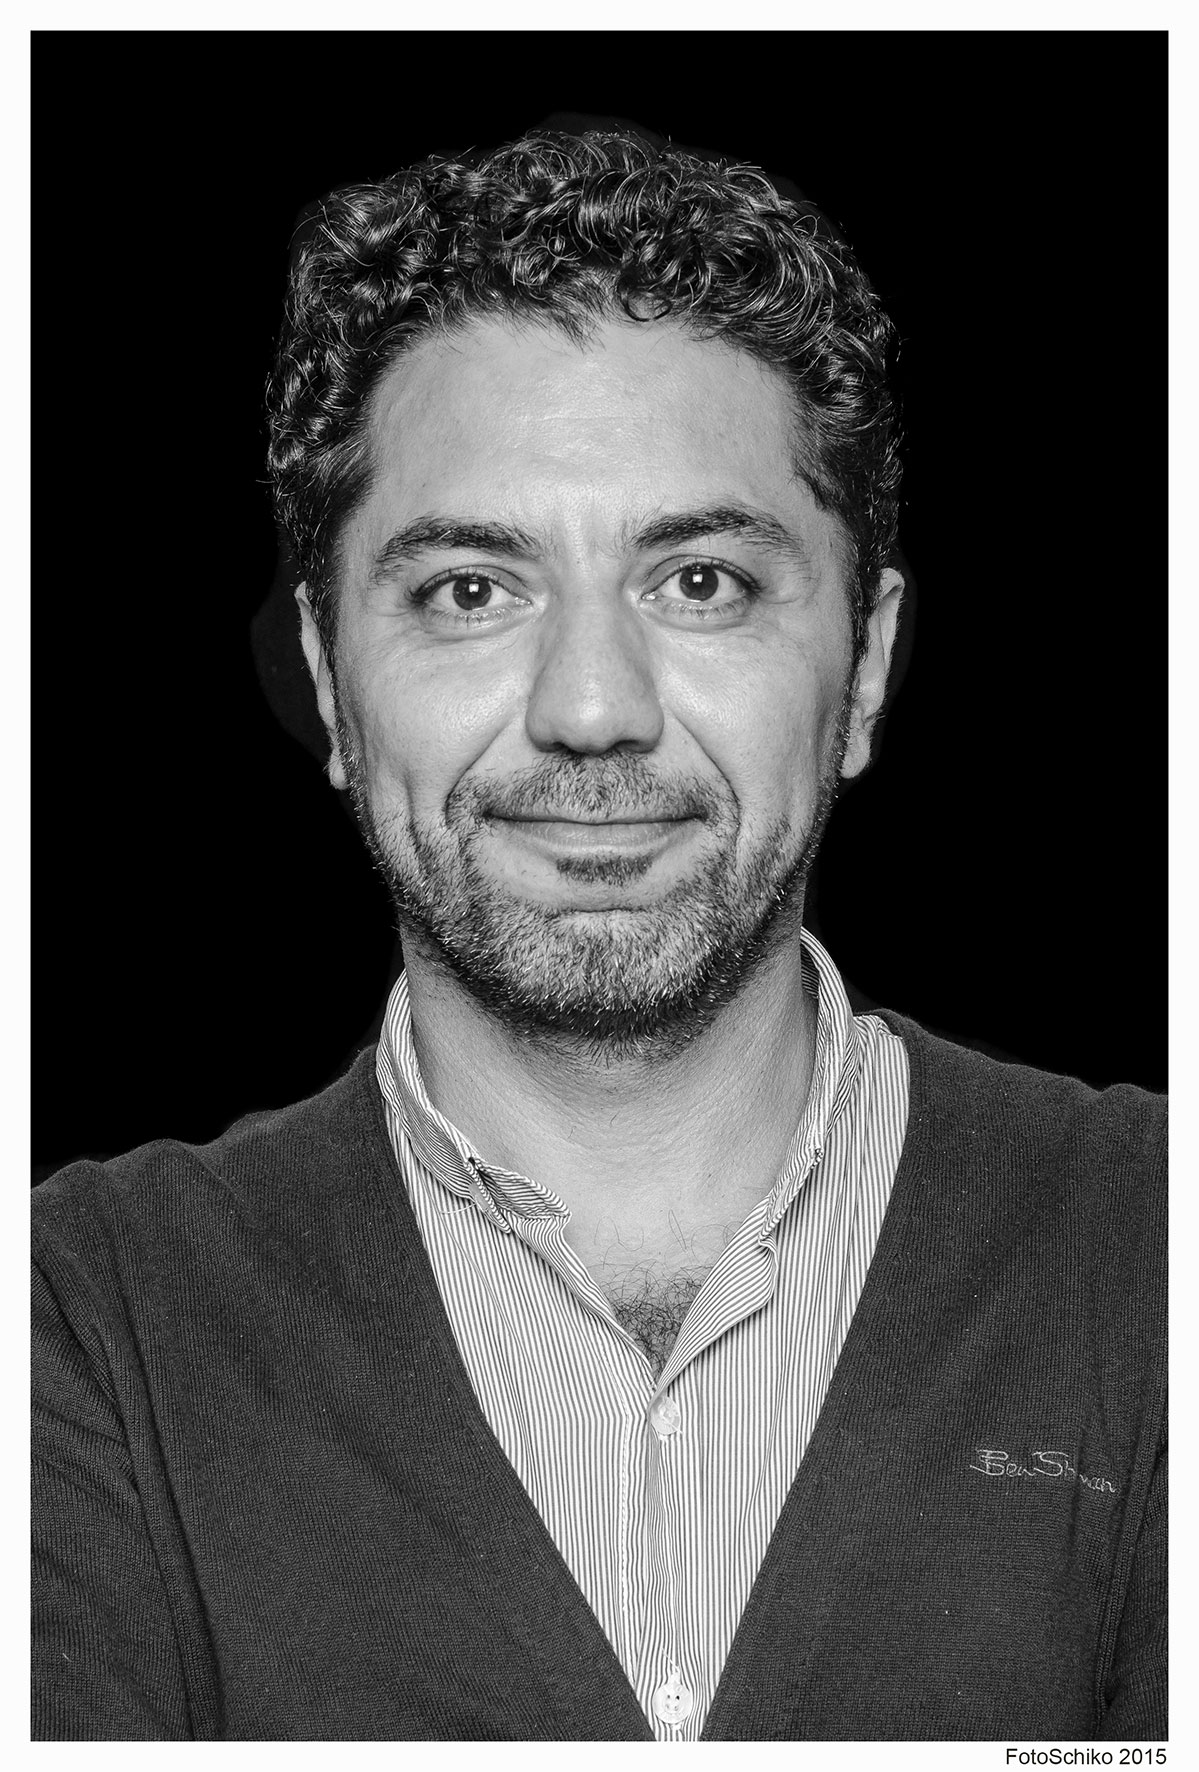 Hamed Shahi steht vor einem schwarzen Hintergrund und sieht freundlich und doirekt in die Kamera. Das Foto ist schwarz/weiß